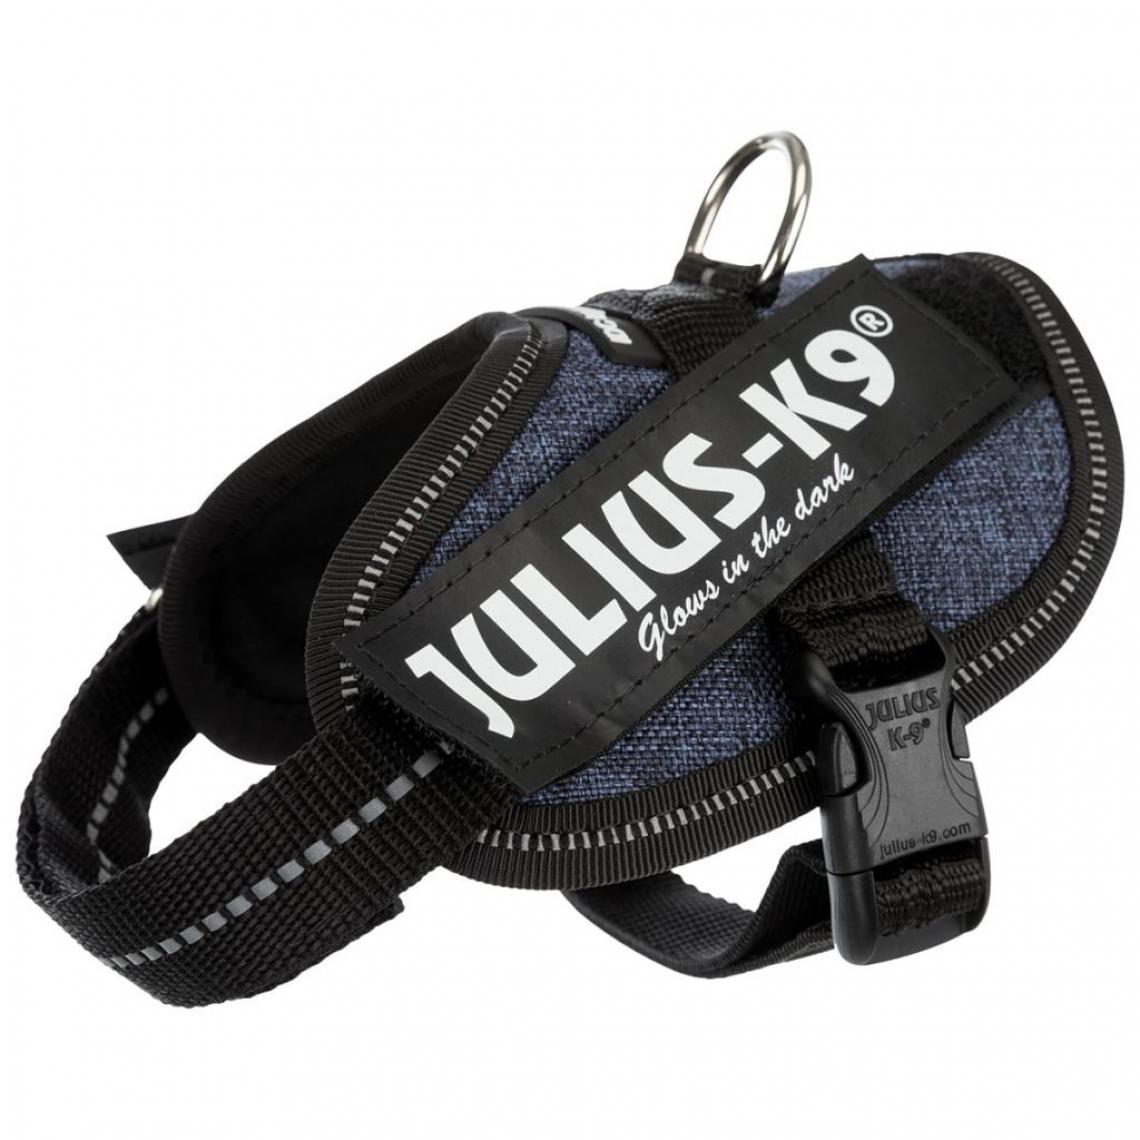 Julius K9 - JULIUS K9 Harnais Power IDC Baby 2–XS–S : 33–45 cm - 18 mm - Bleu jean - Pour chien - Equipement de transport pour chien